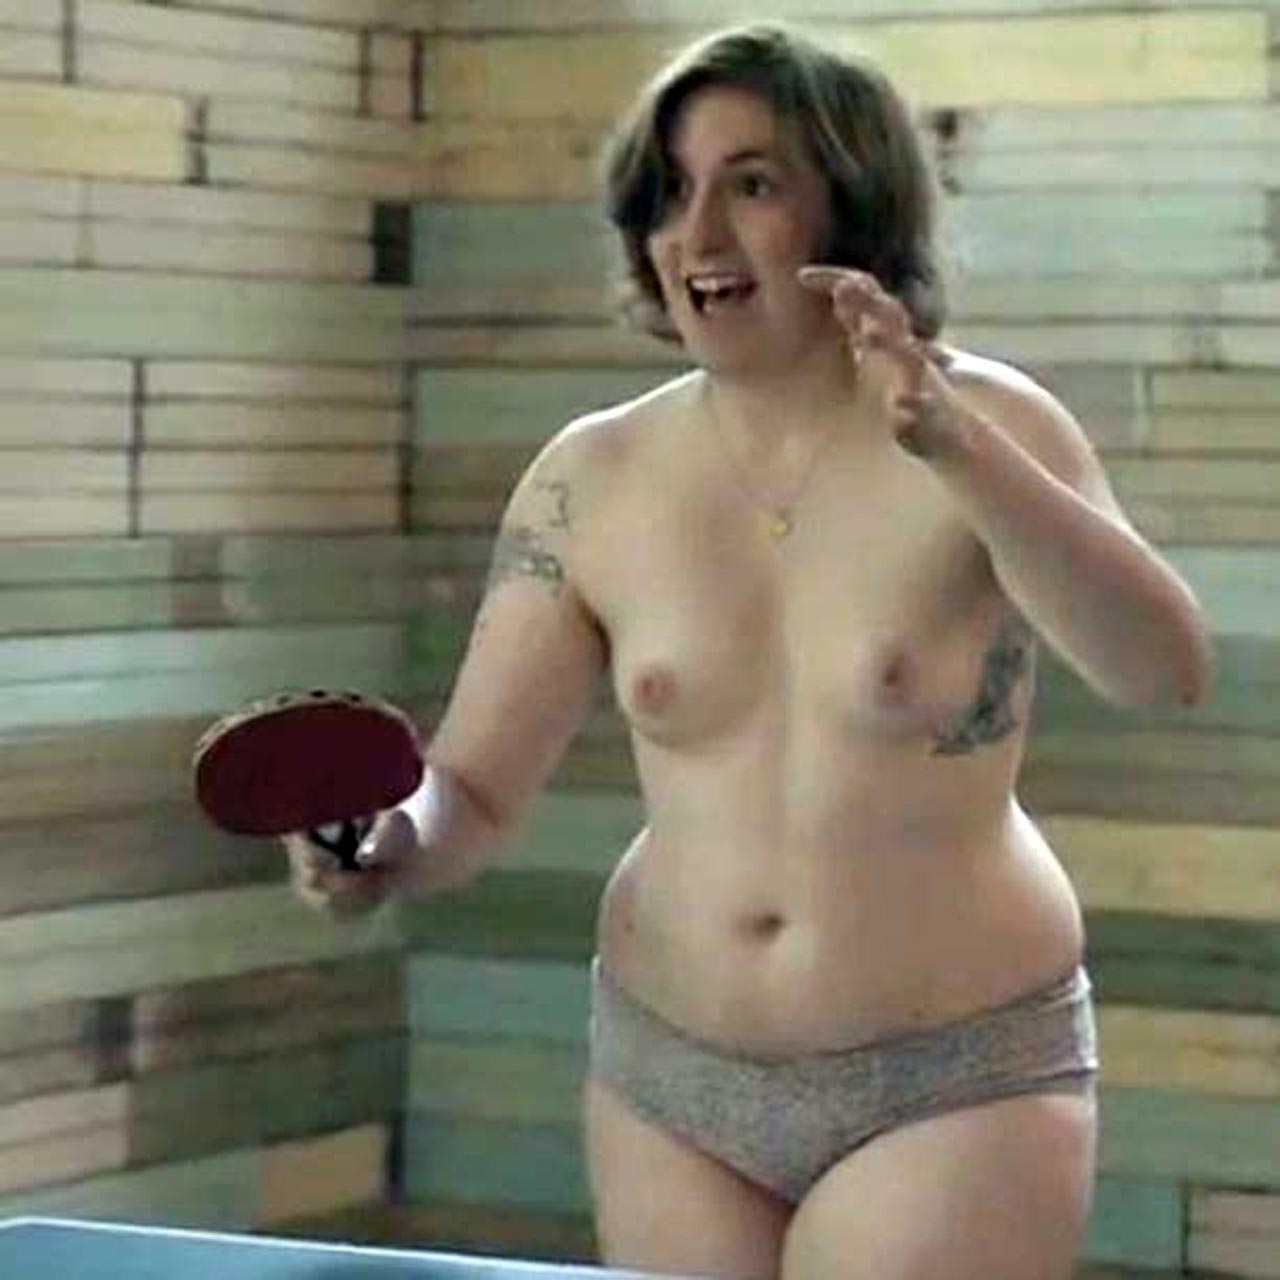 Lena dunham naked photos - Lena Dunham posts completely nude photo...